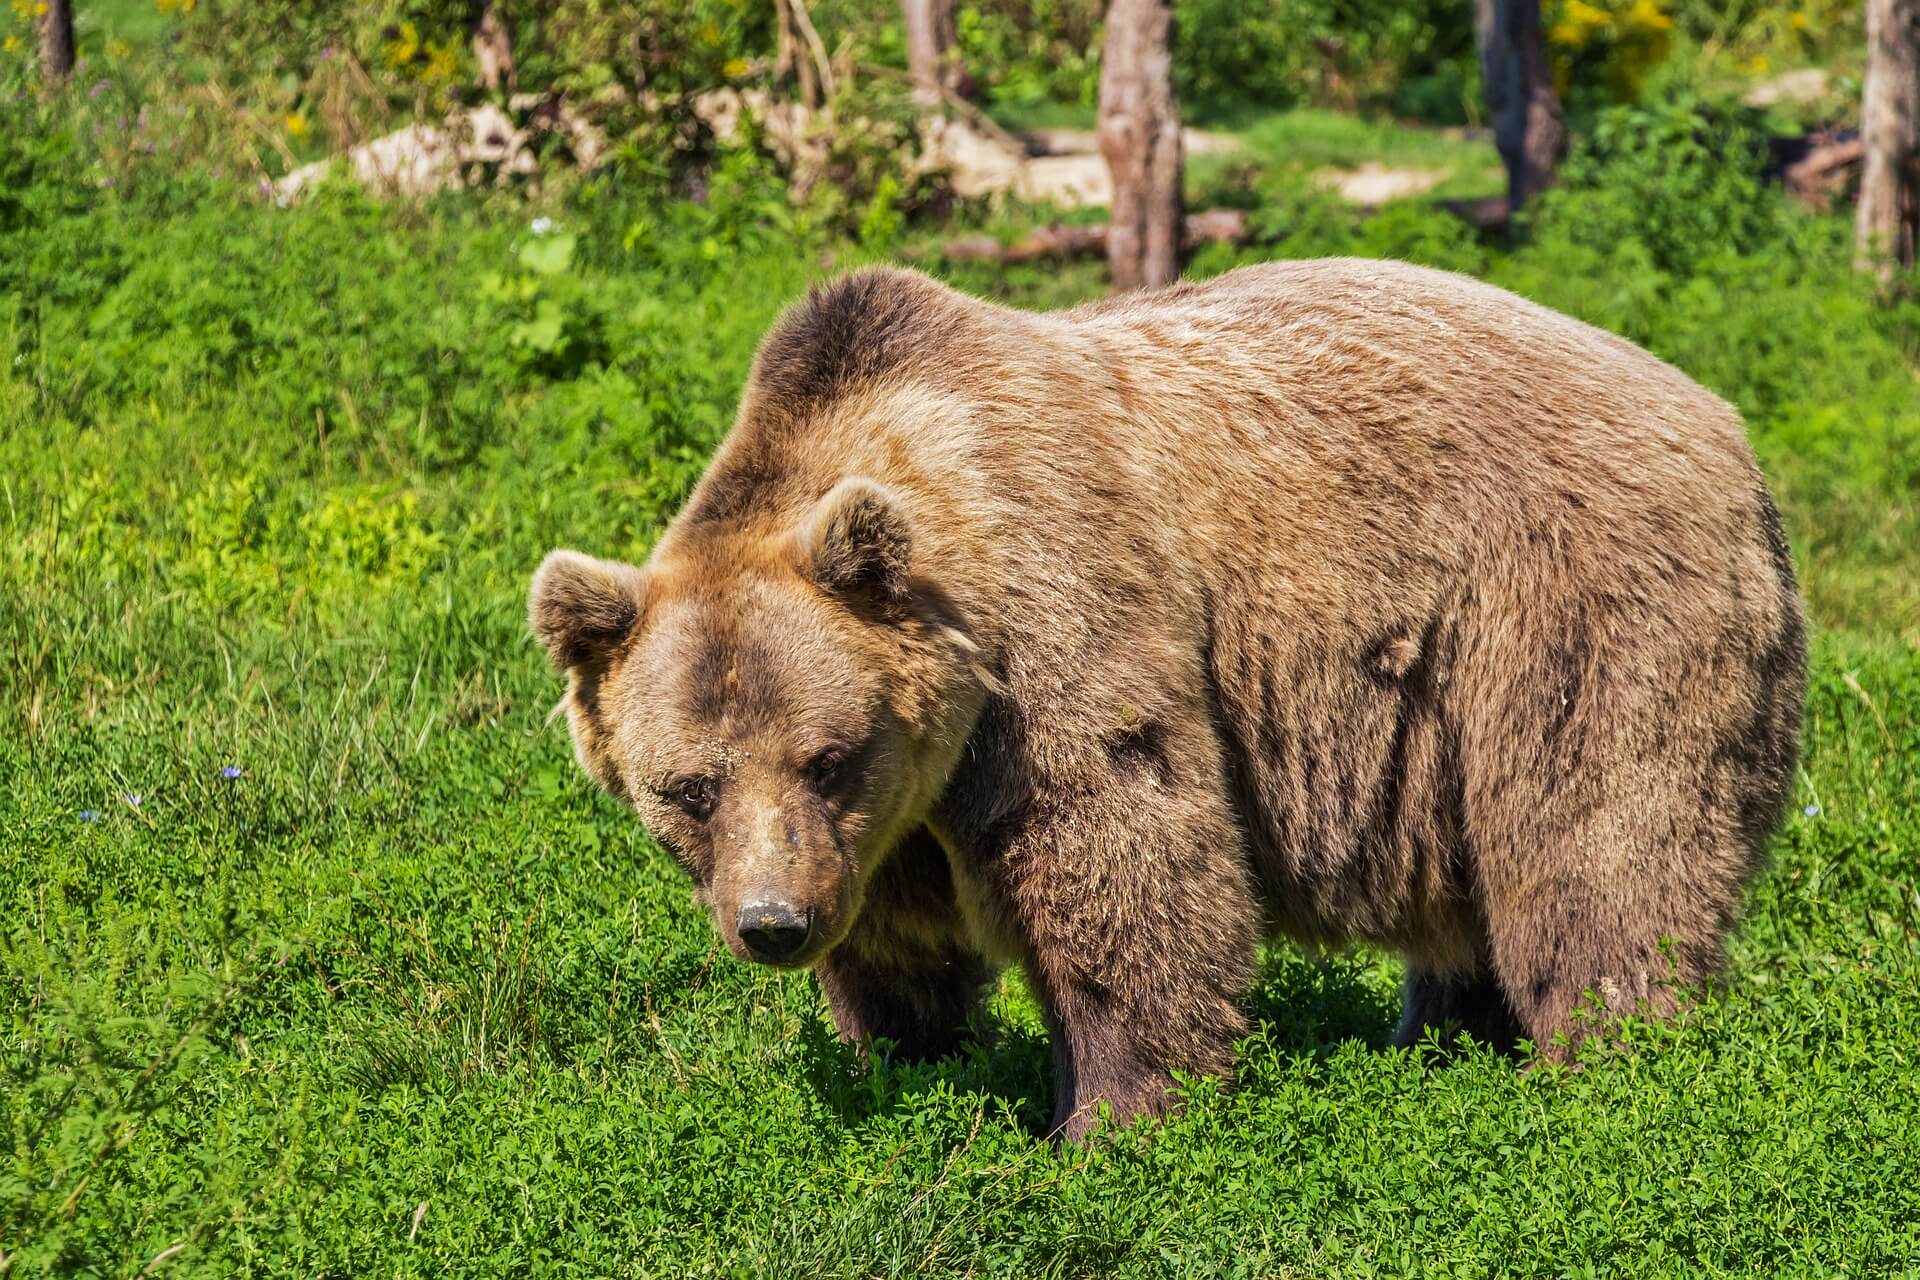 Vertel Britse functionarissen dat de Canadese berenslachtpartijen moeten stoppen